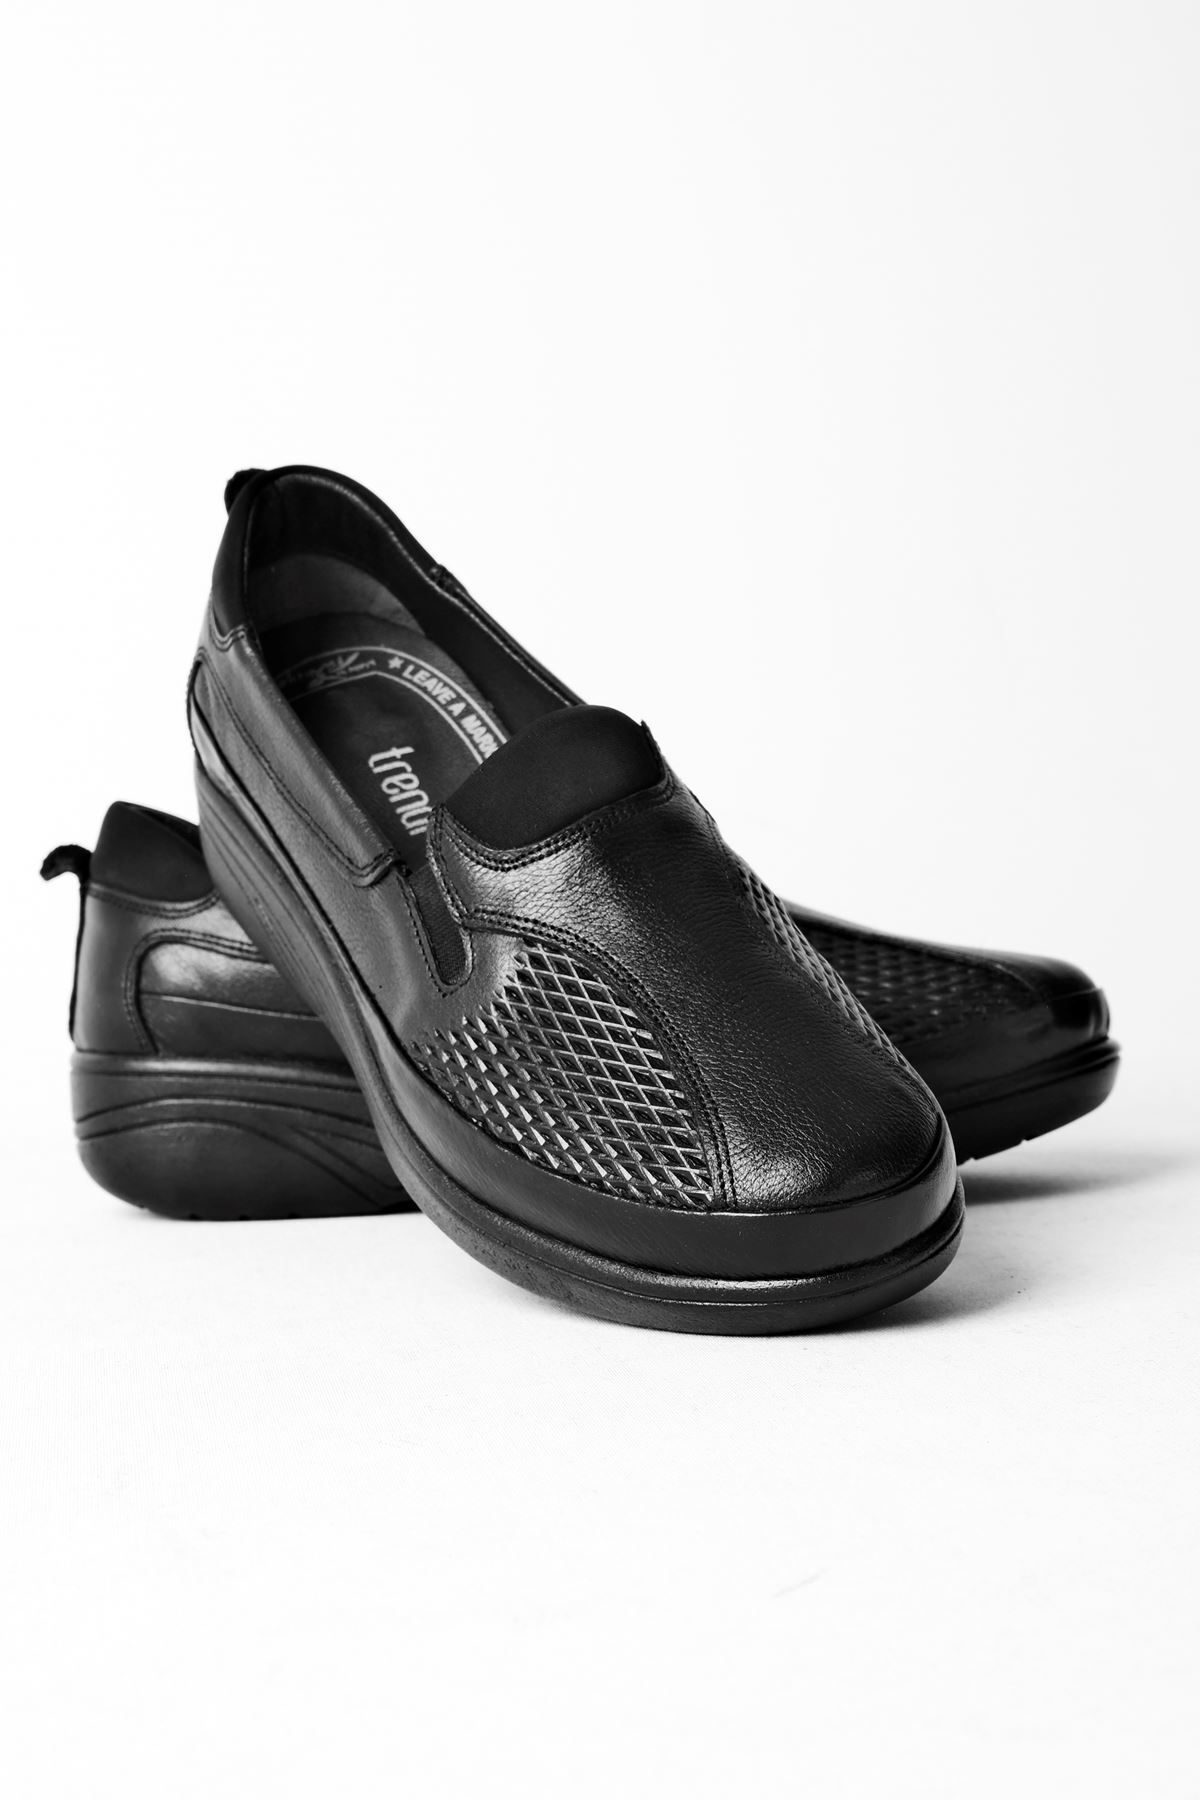 LAL SHOES & BAGS Jose Lastik Detay Kadın Hakiki Deri Günlük Ayakkabı-siyah